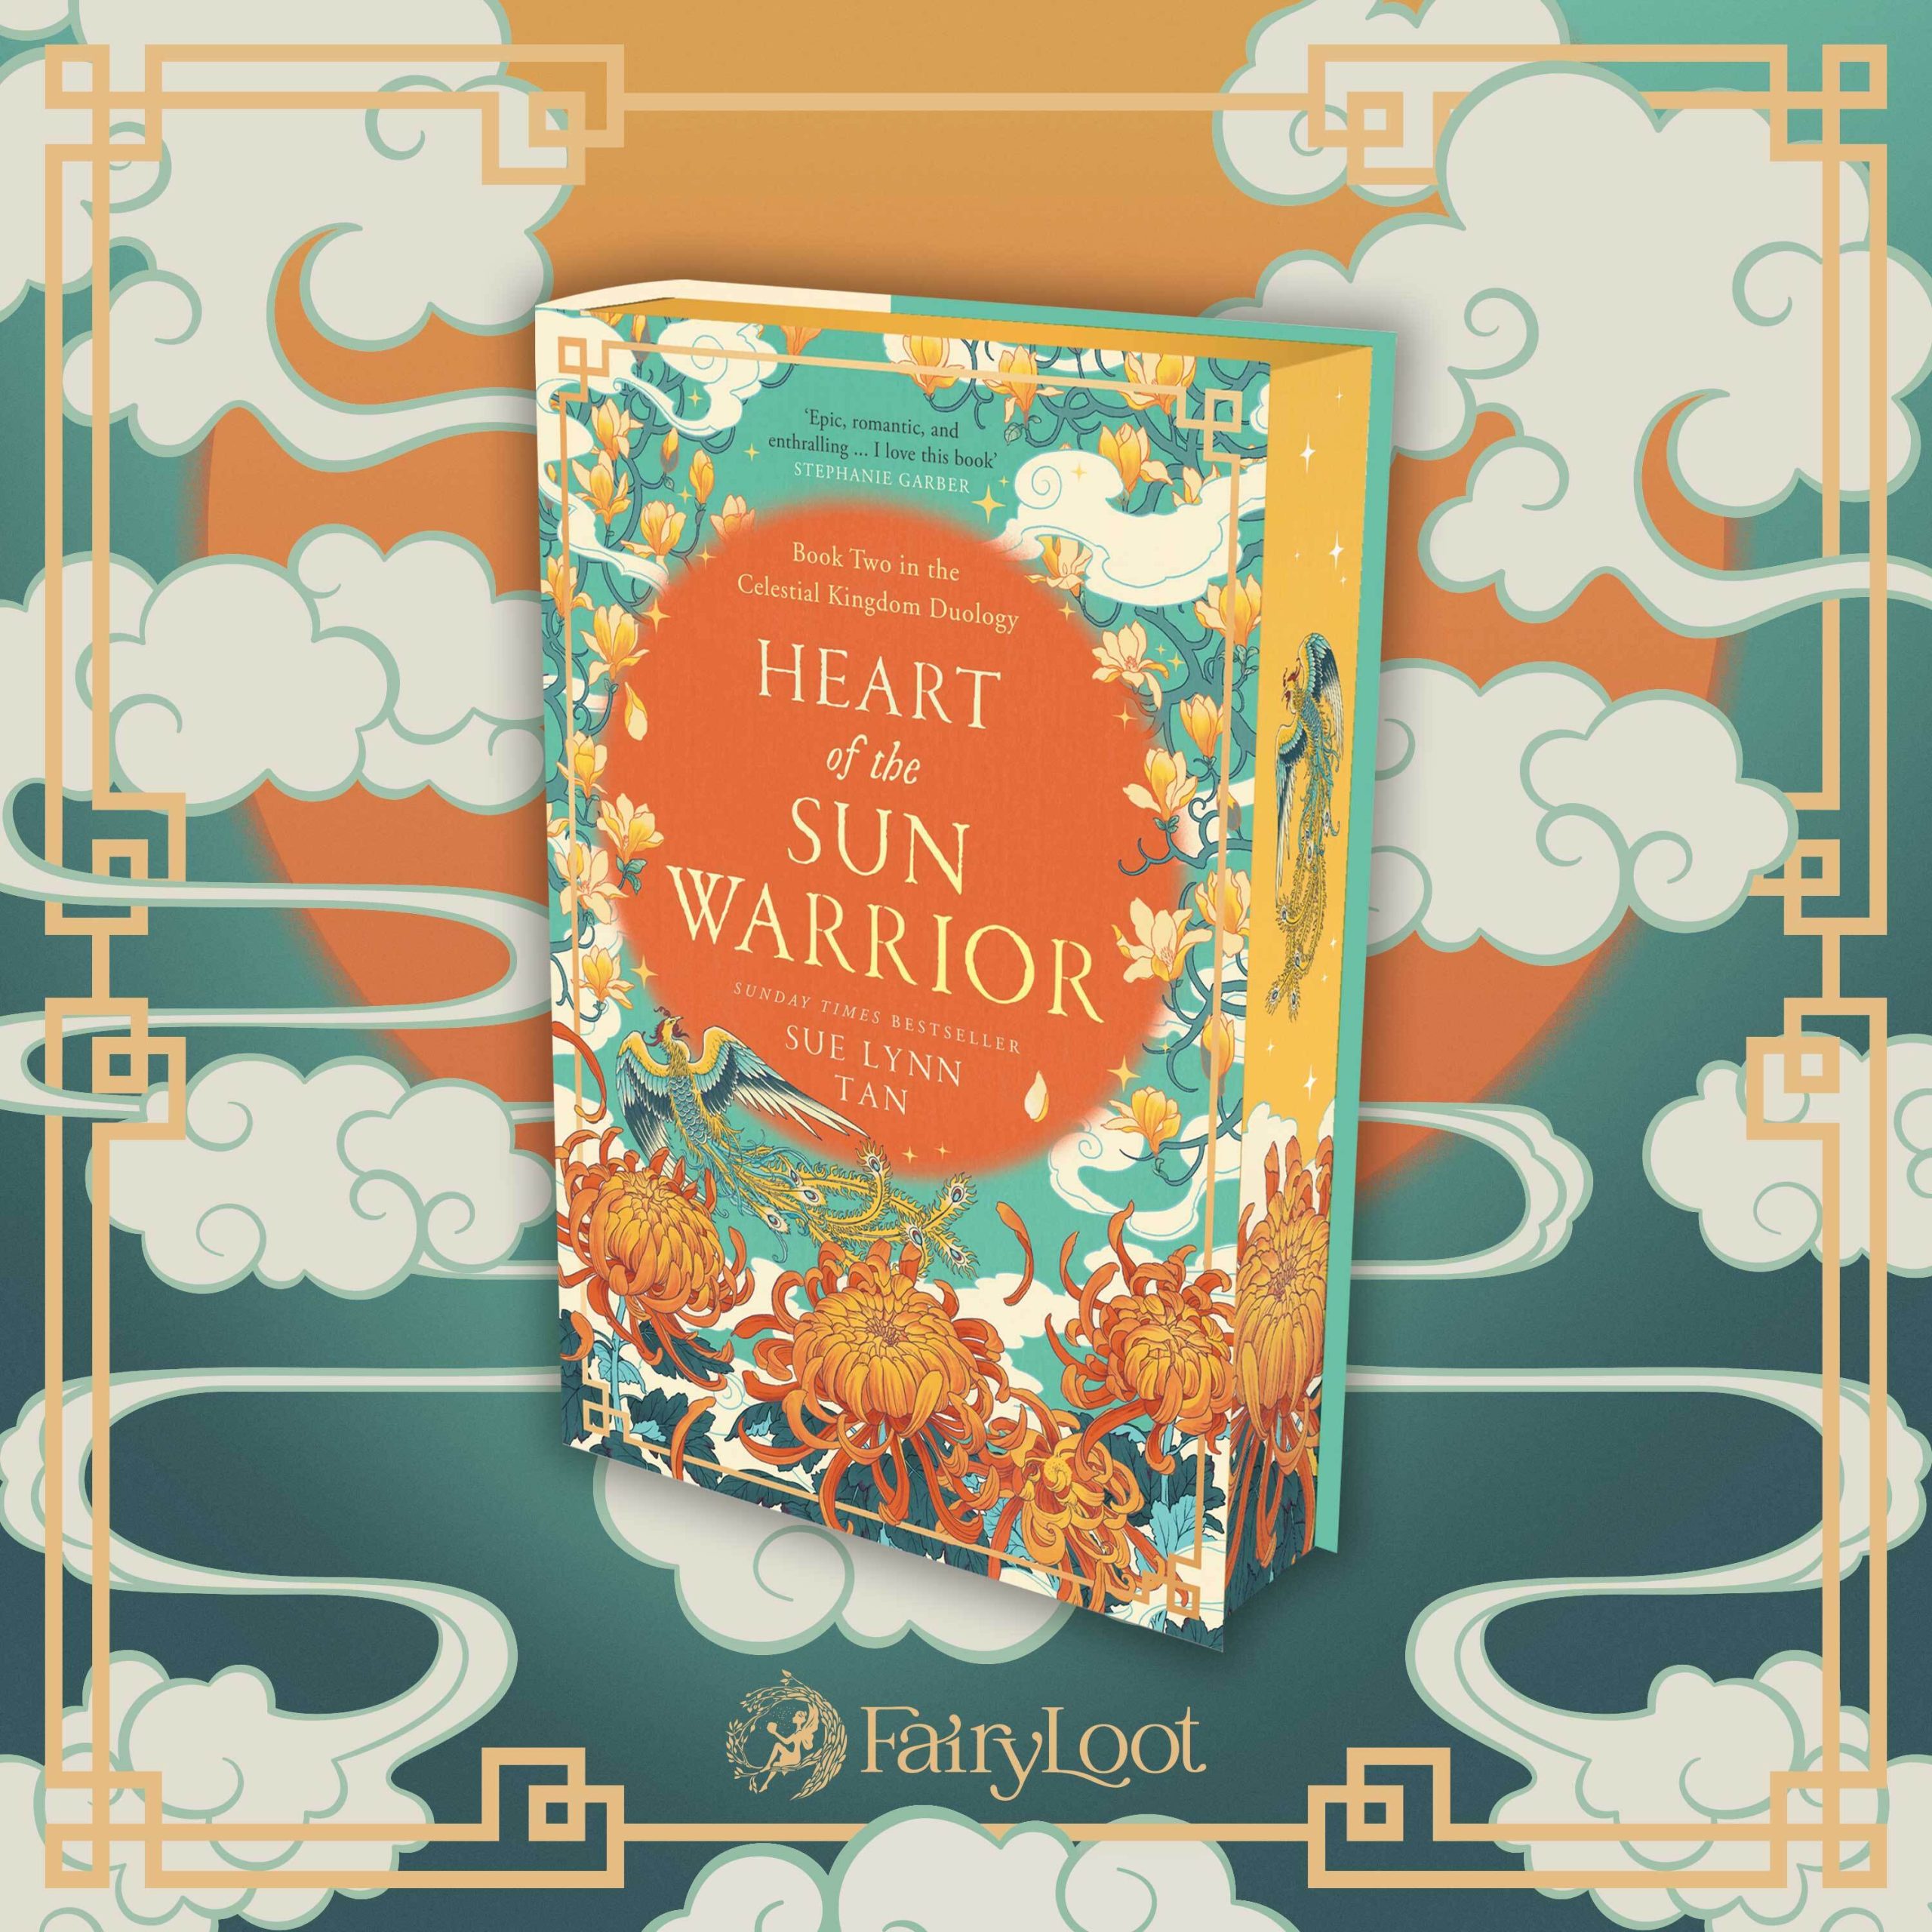 Heart of the Sun Warrior by Sue Lynn Tan